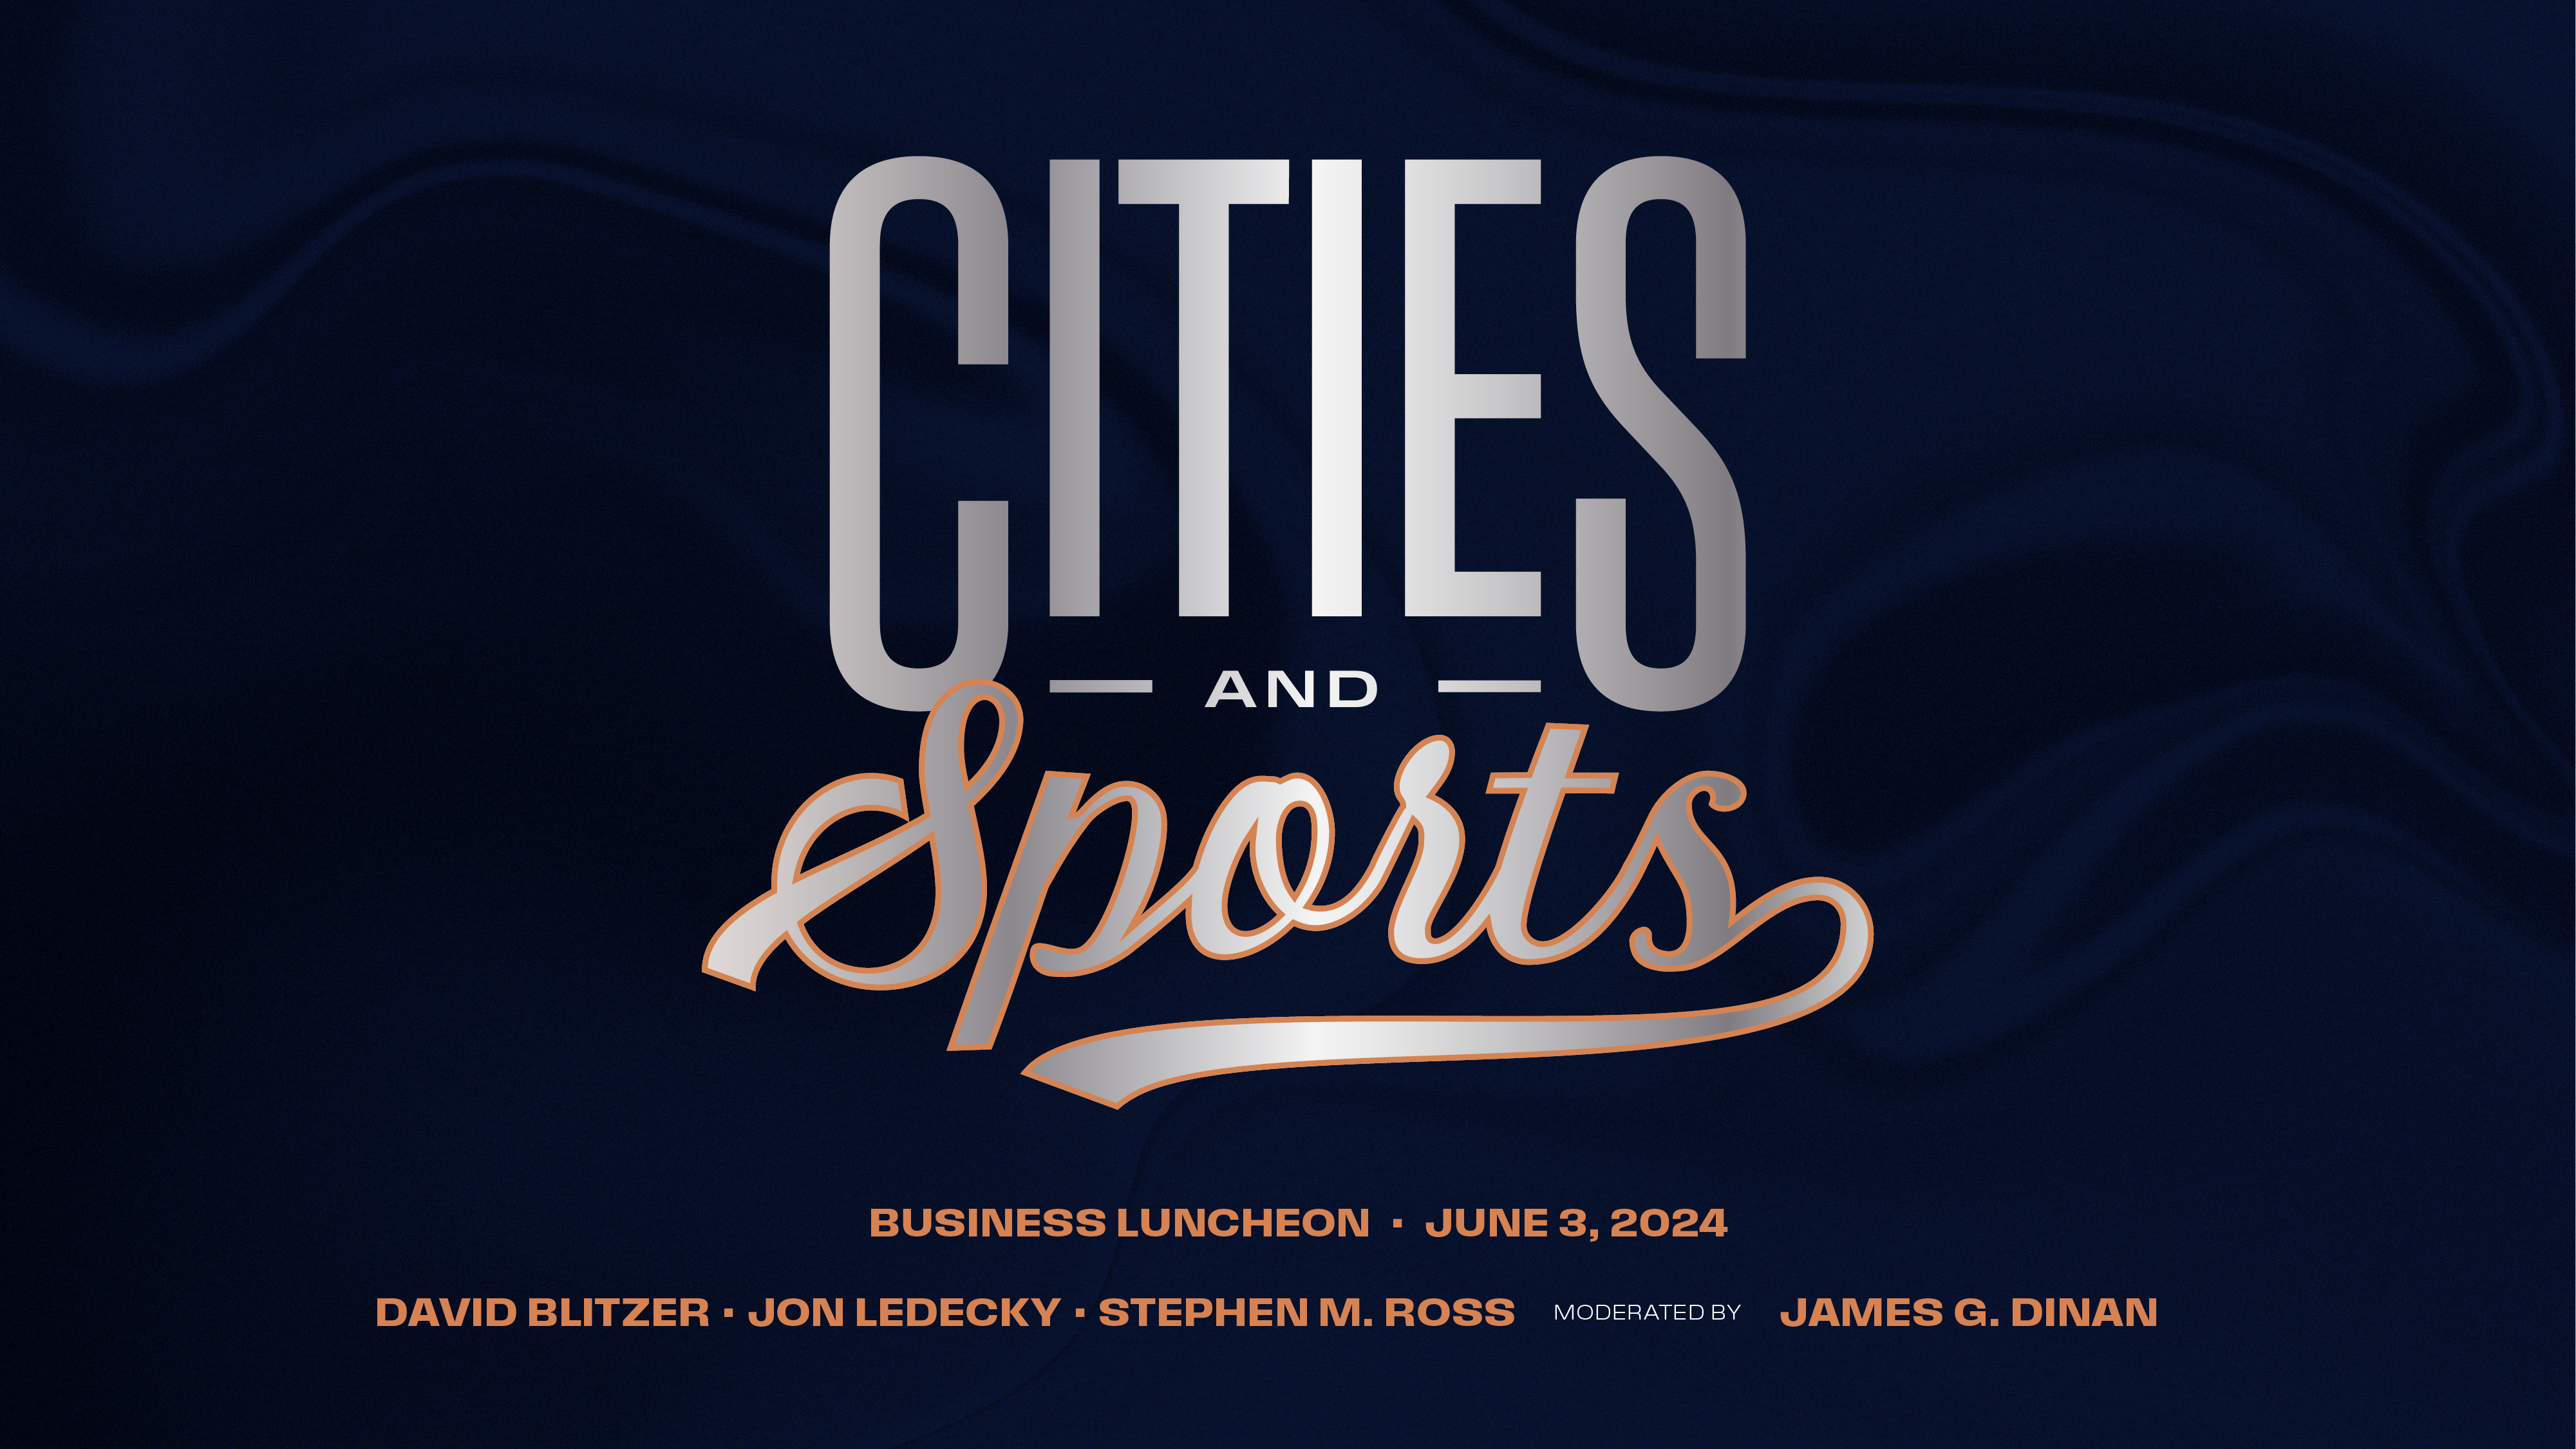 Almuerzo sobre ciudades y empresas deportivas el 3 de junio con David Blitzer, Jon Ledecky, Stephen M. Ross y James G. Dinan